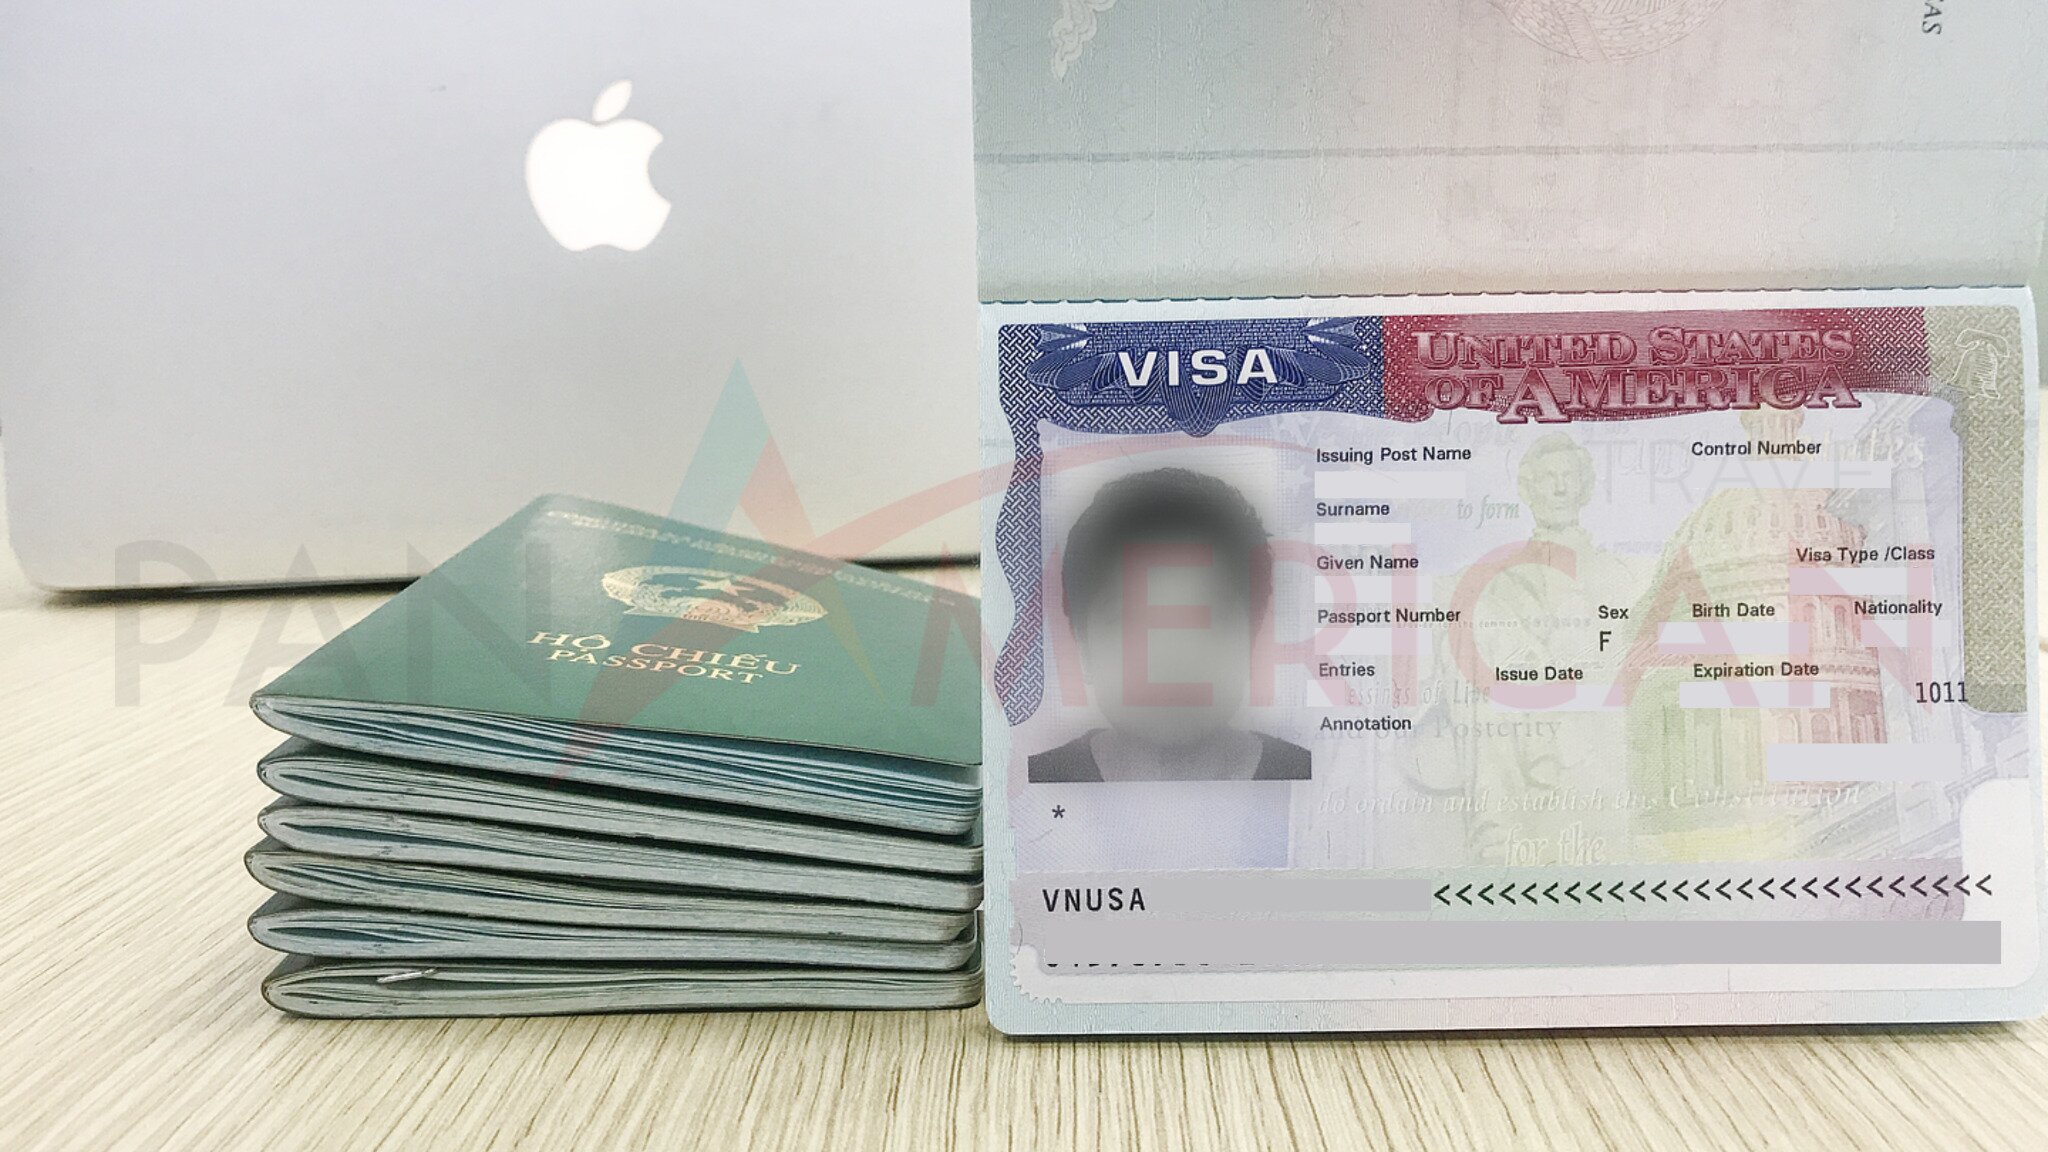 PanVisa chuyên cung cấp dịch vụ visa thị trường châu Âu, châu Mỹ